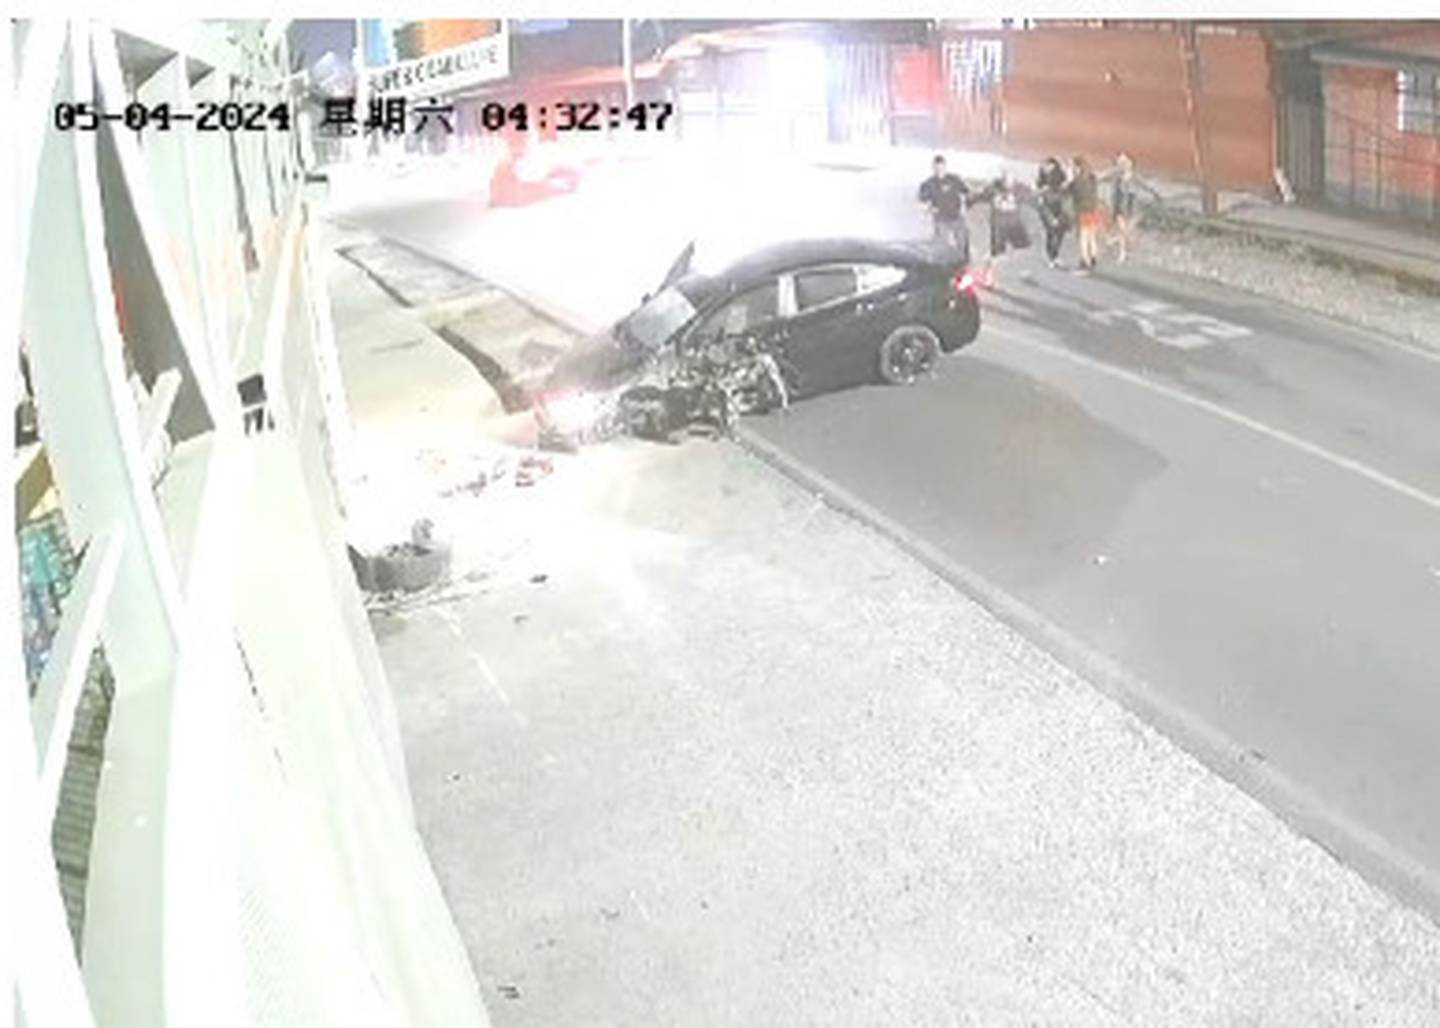 En un video se observa cómo ocurrió el accidente